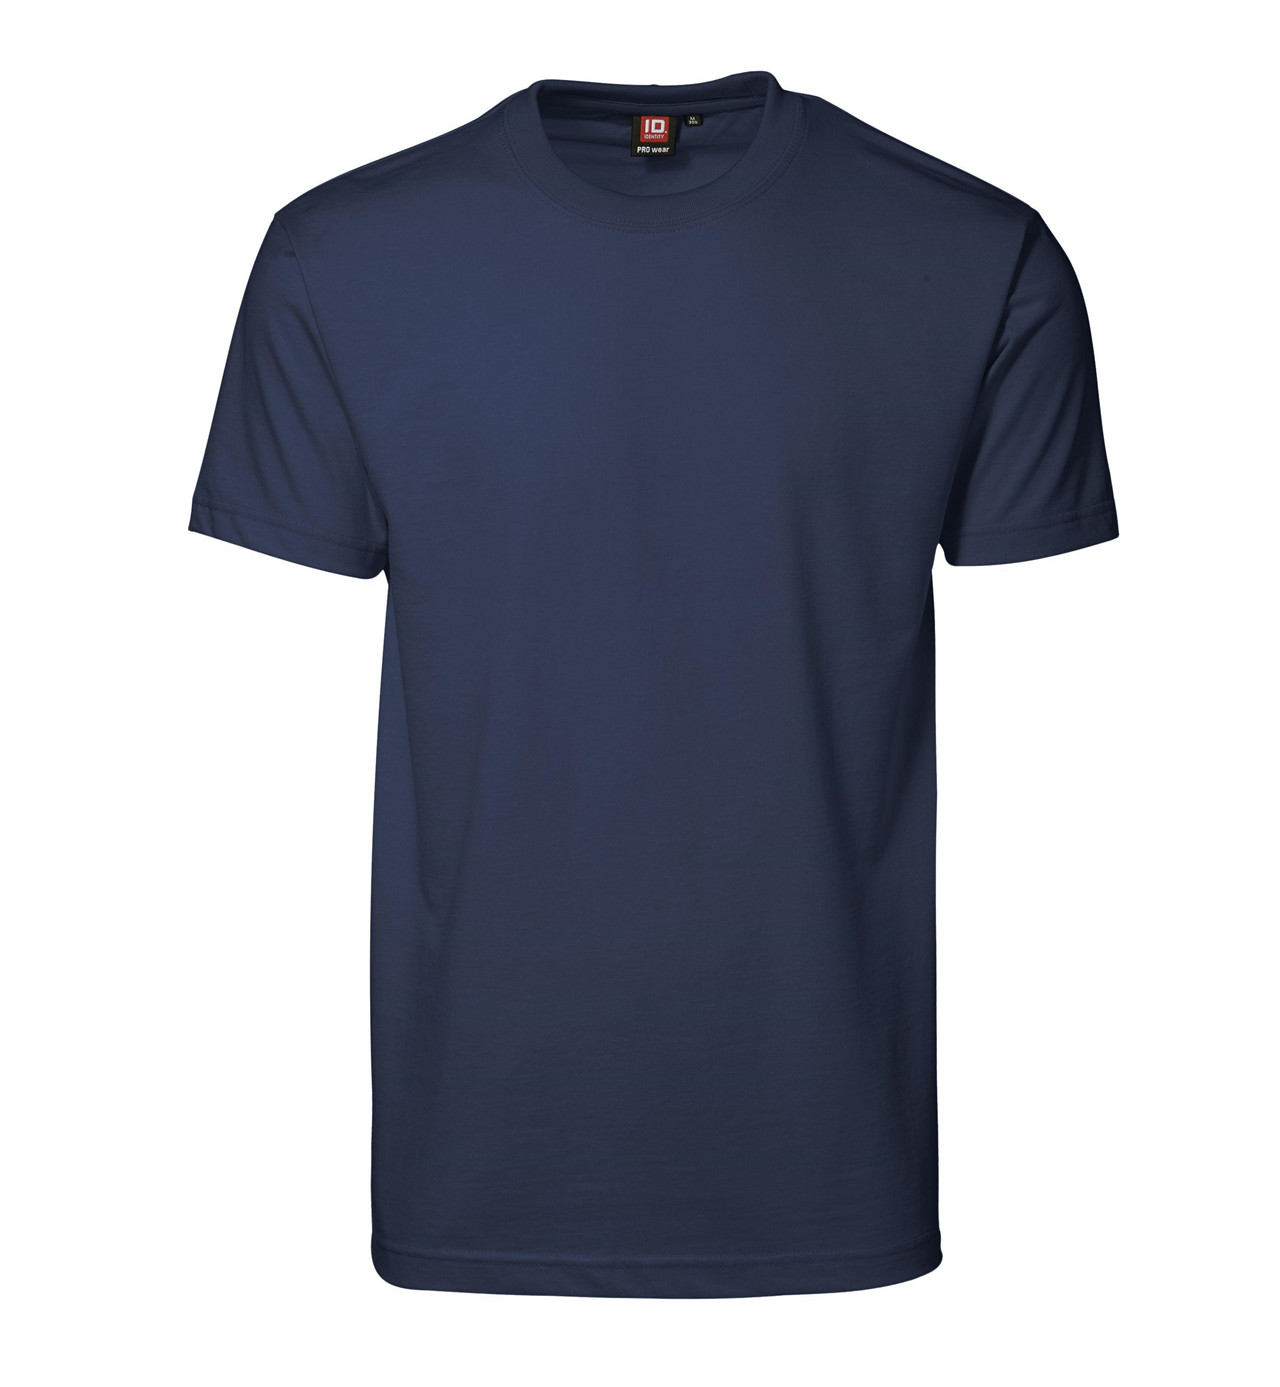 ID PRO Wear T-shirt til Herre (Navy, S)